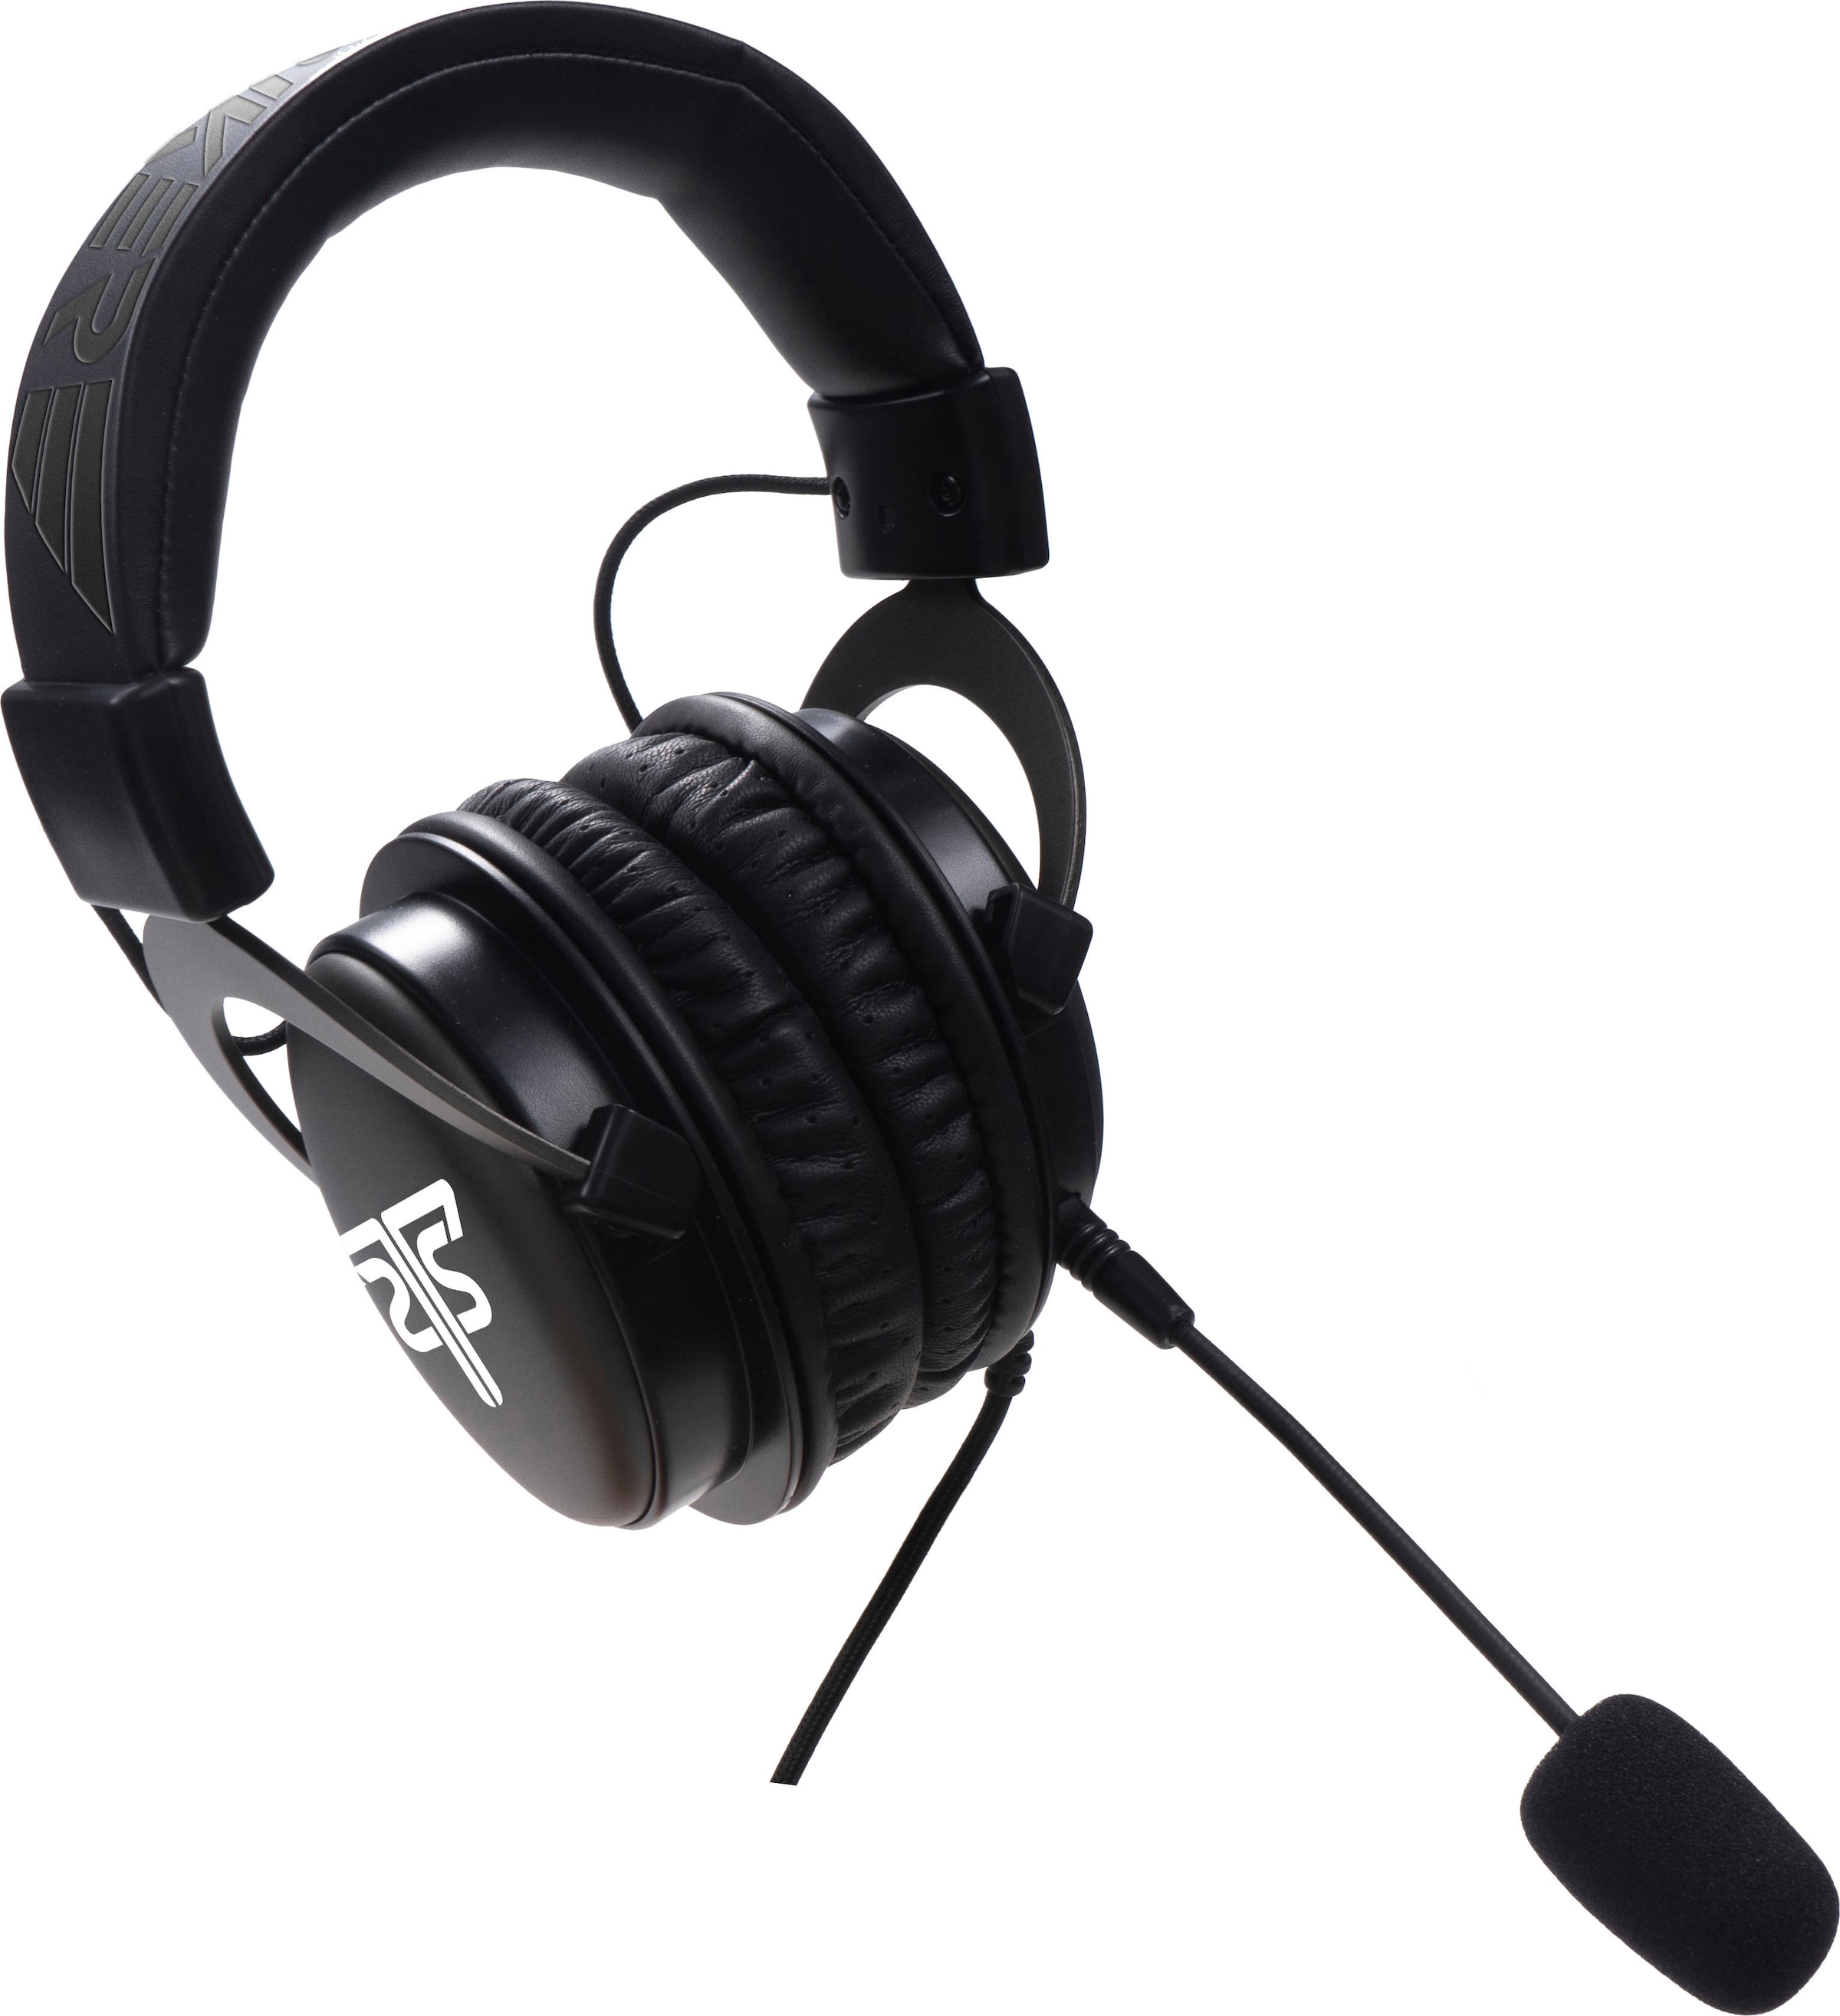 Hyrican Gaming-Headset geeignet HEADQUARTER 7.1 abnehmbar, kabelgebunden«, für ST-GH823 Mikrofon PC/PS4 bei Surround« OTTO kaufen »Striker jetzt